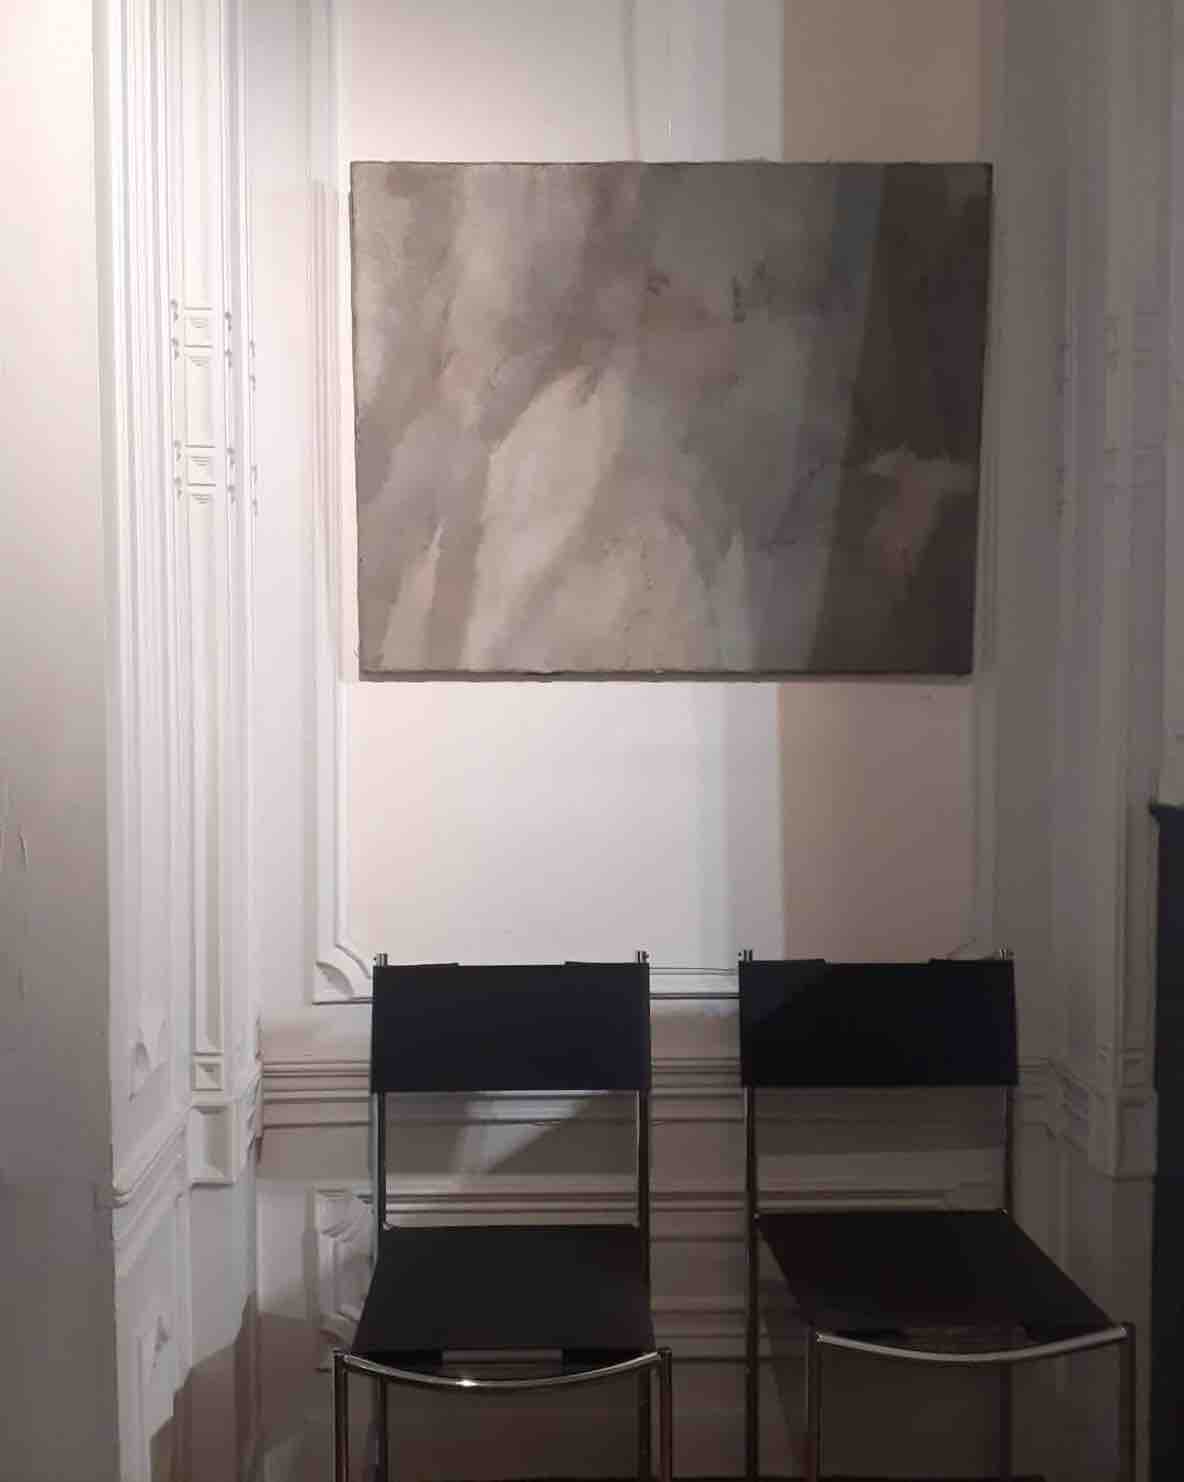 Une partie de la galerie d'art antoine delerive dans le vieux-lille, nous y voyons deux chaises sur le premier plan ainsi qu'un tableau au dessus.